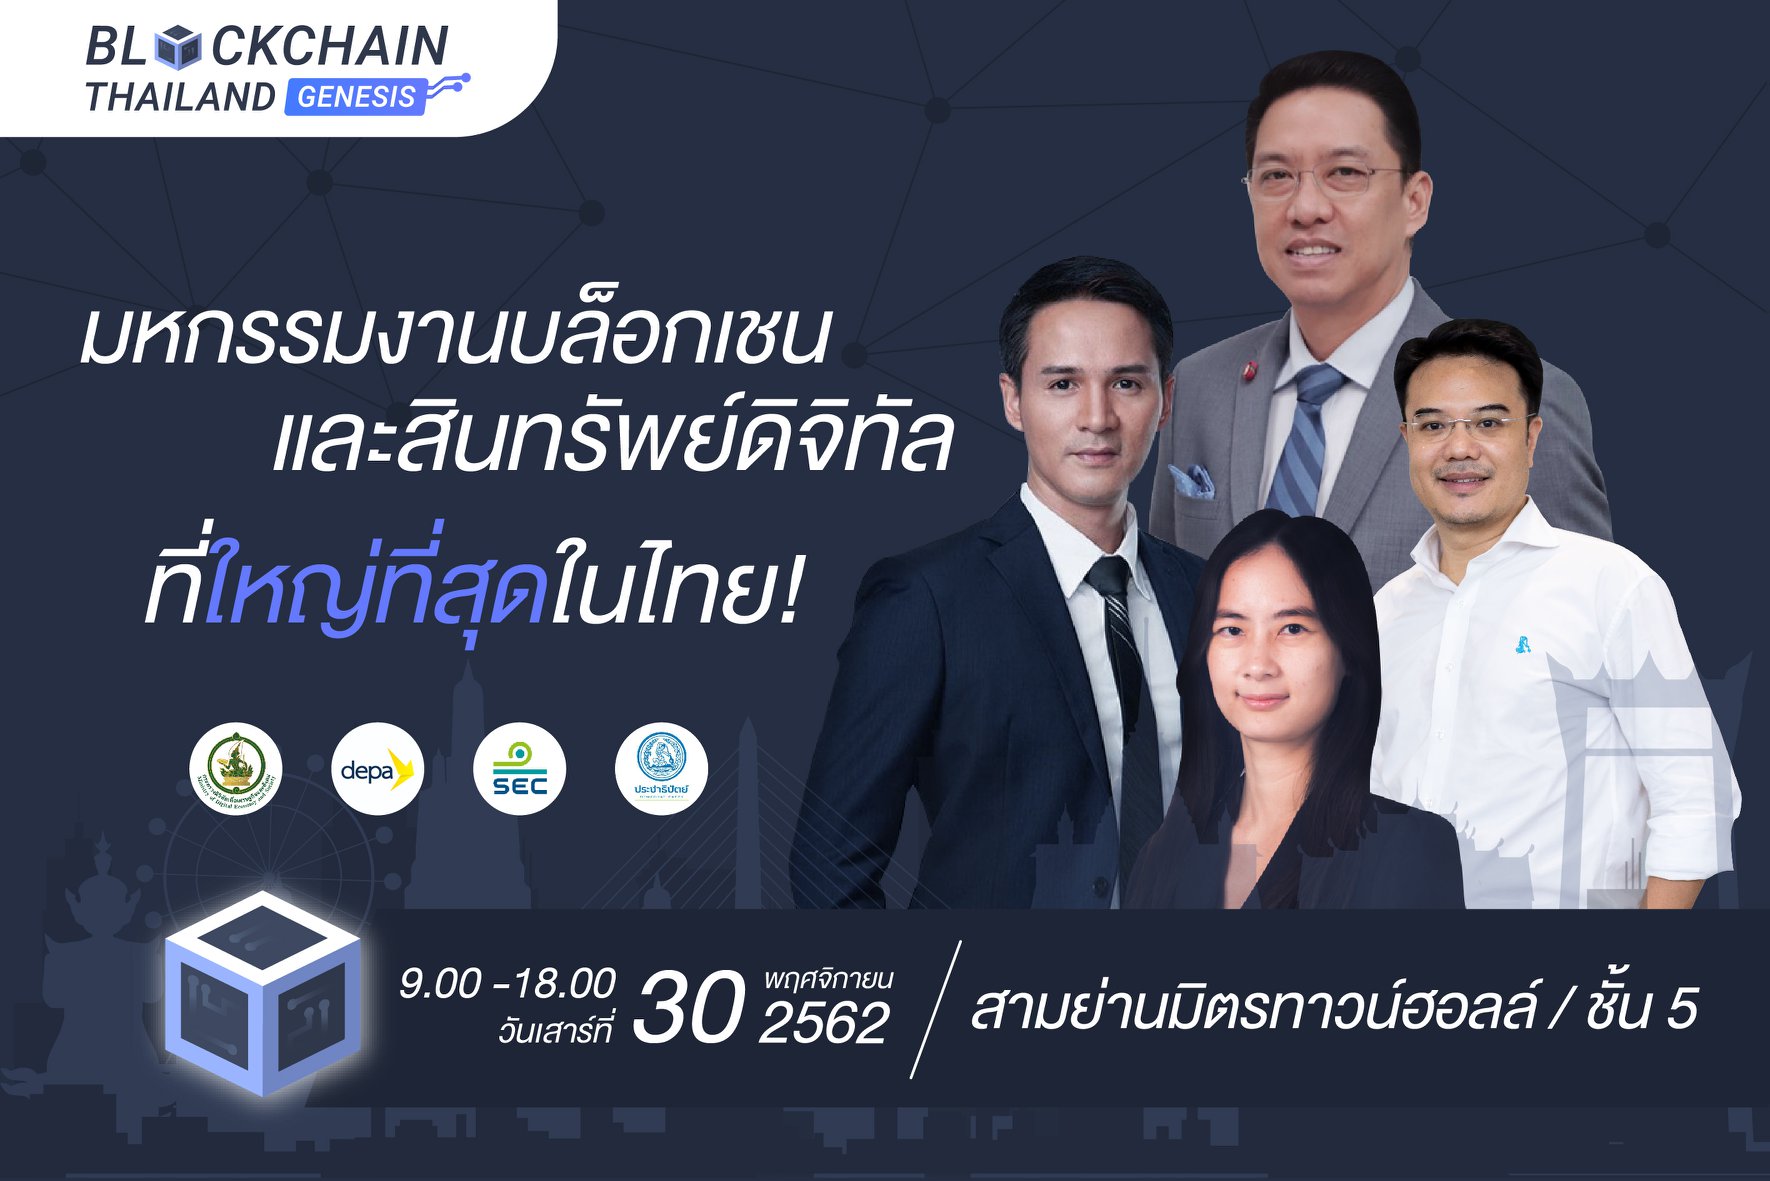 มหกรรมงานบล็อกเชนที่ใหญ่ที่สุดในประเทศ Blockchain Thailand Genesis 2019